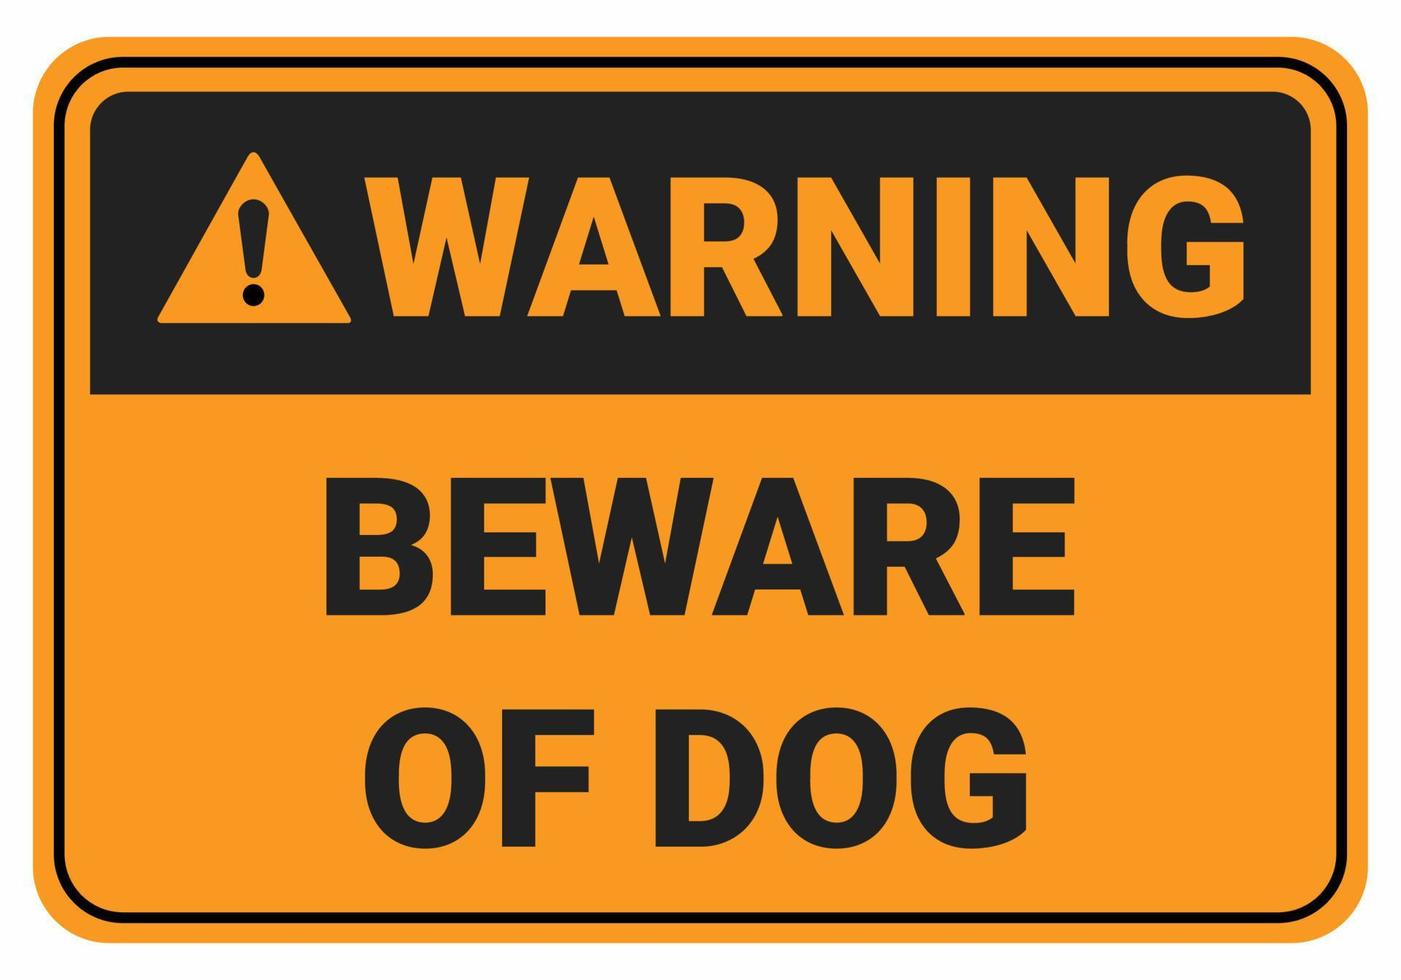 cuidado com o cão. ilustração em vetor sinal de segurança de aviso. sinal padrão osha e ansi. eps10